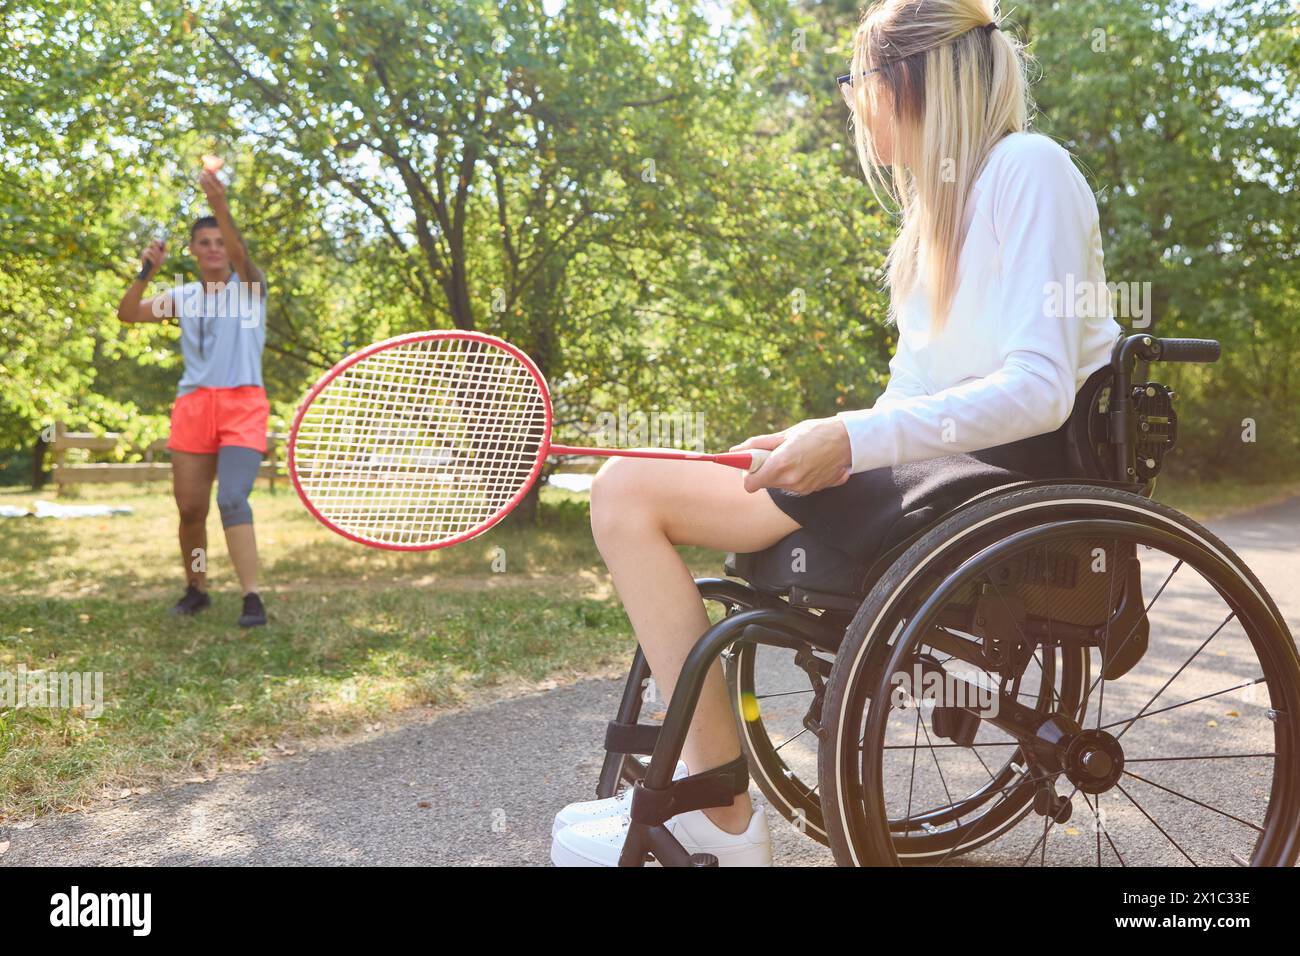 Una mujer usando una silla de ruedas y su amiga jugando bádminton en un parque, representando alegría y estilo de vida activo a pesar de los desafíos físicos. Foto de stock